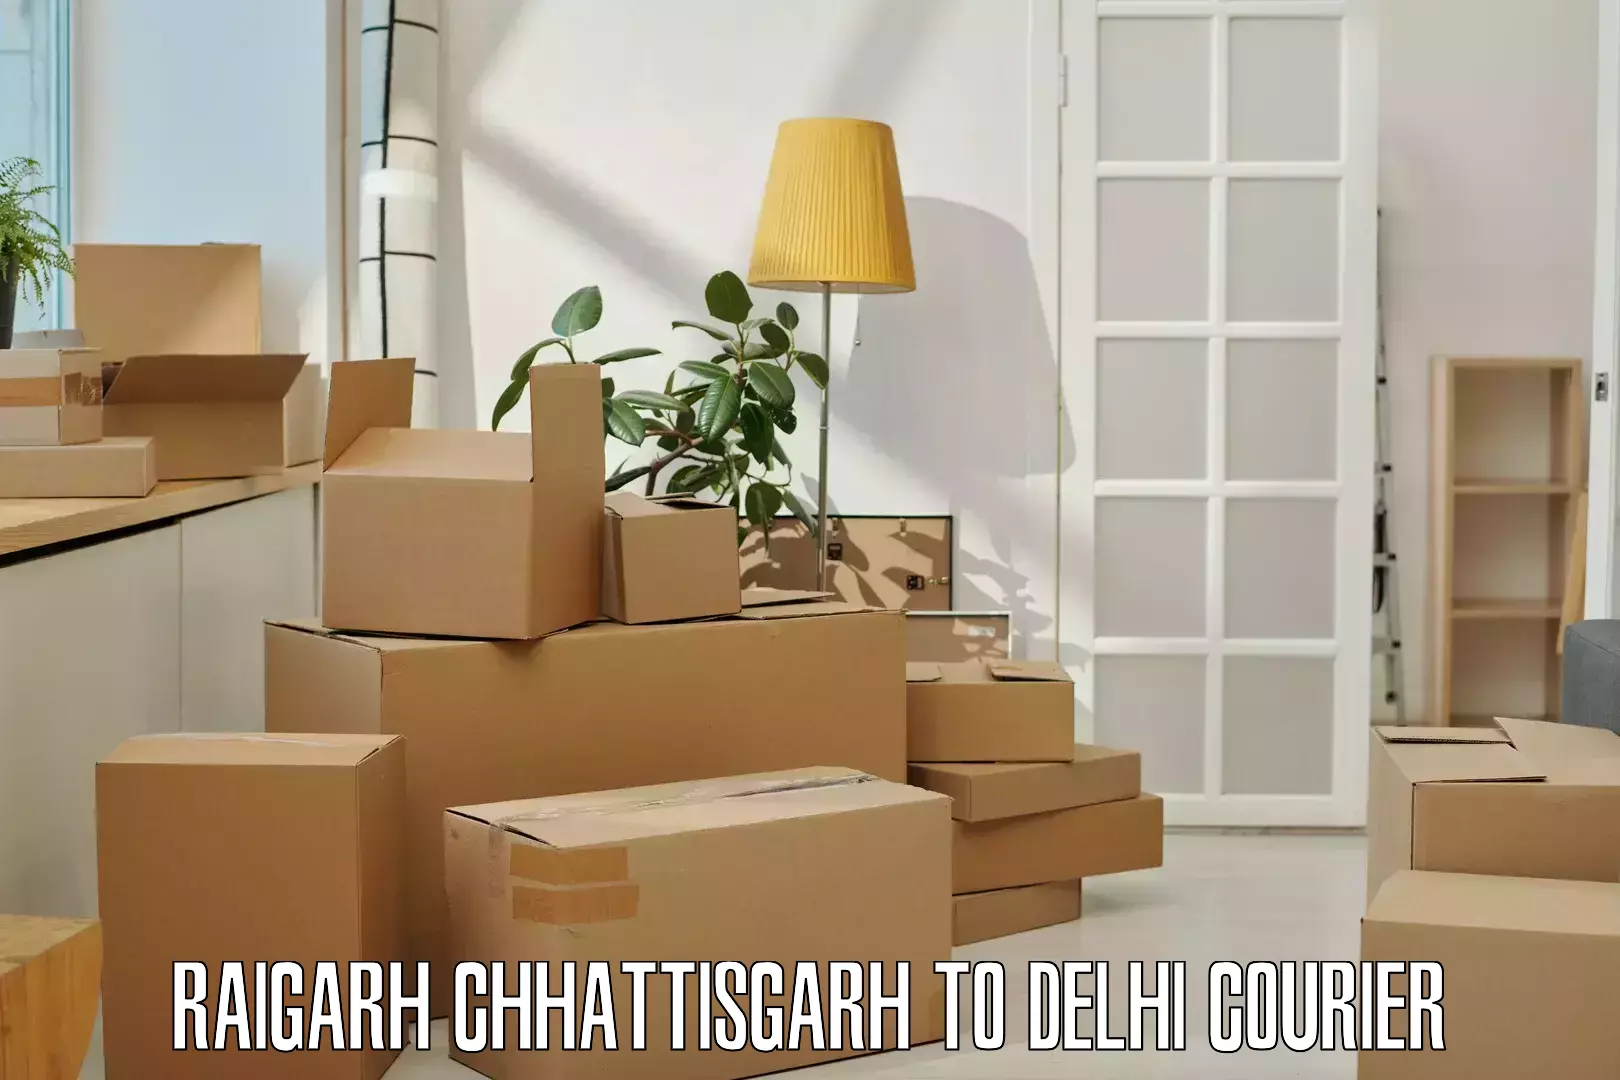 Return courier service Raigarh Chhattisgarh to Jamia Millia Islamia New Delhi